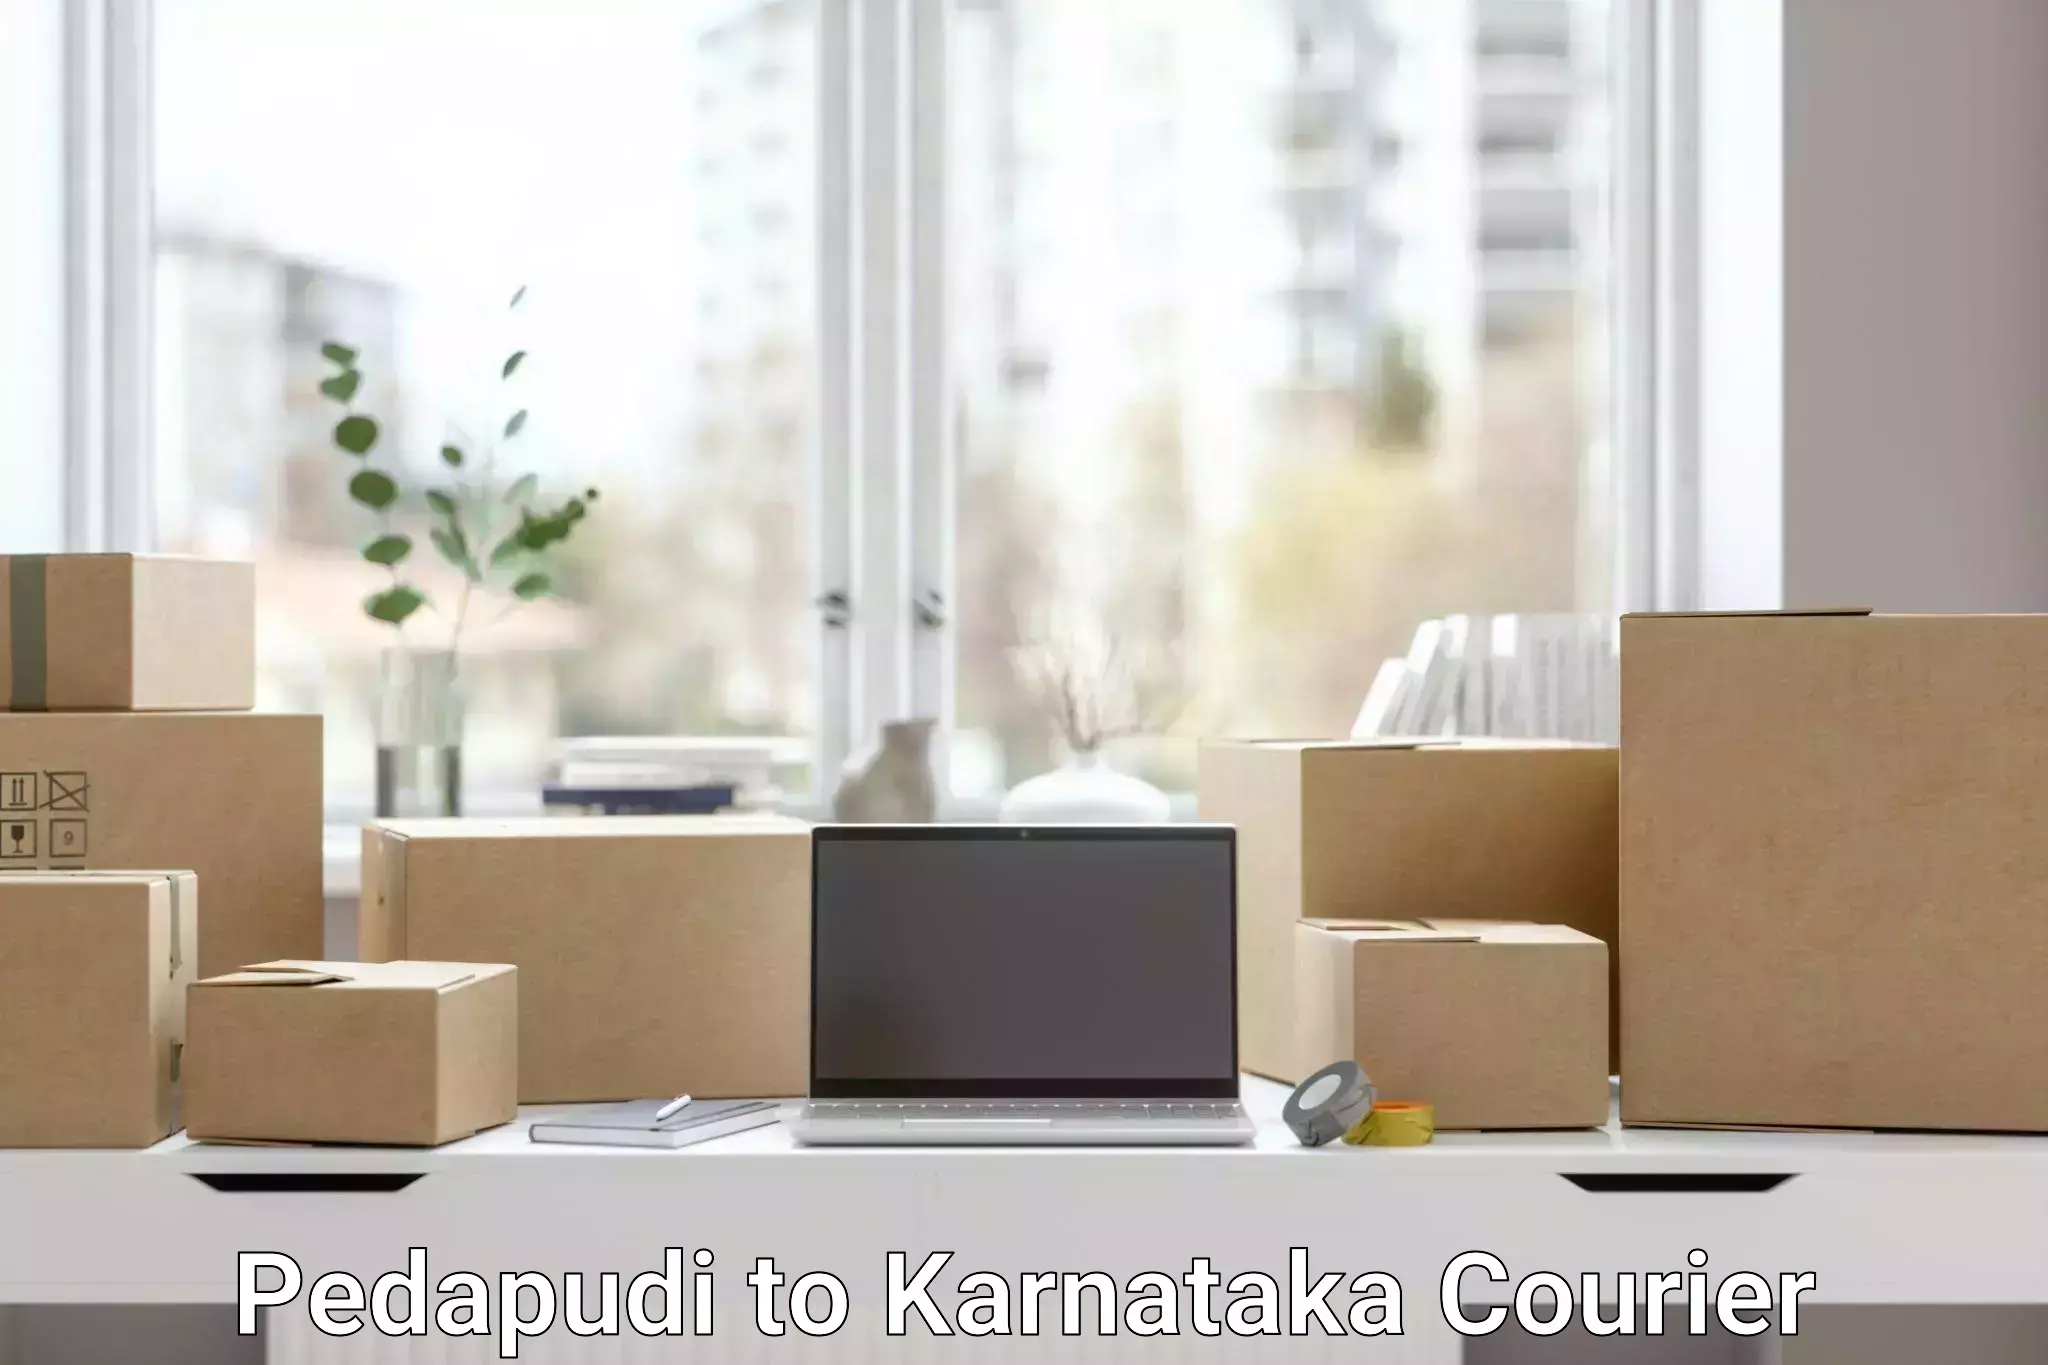 E-commerce logistics support Pedapudi to Kudligi